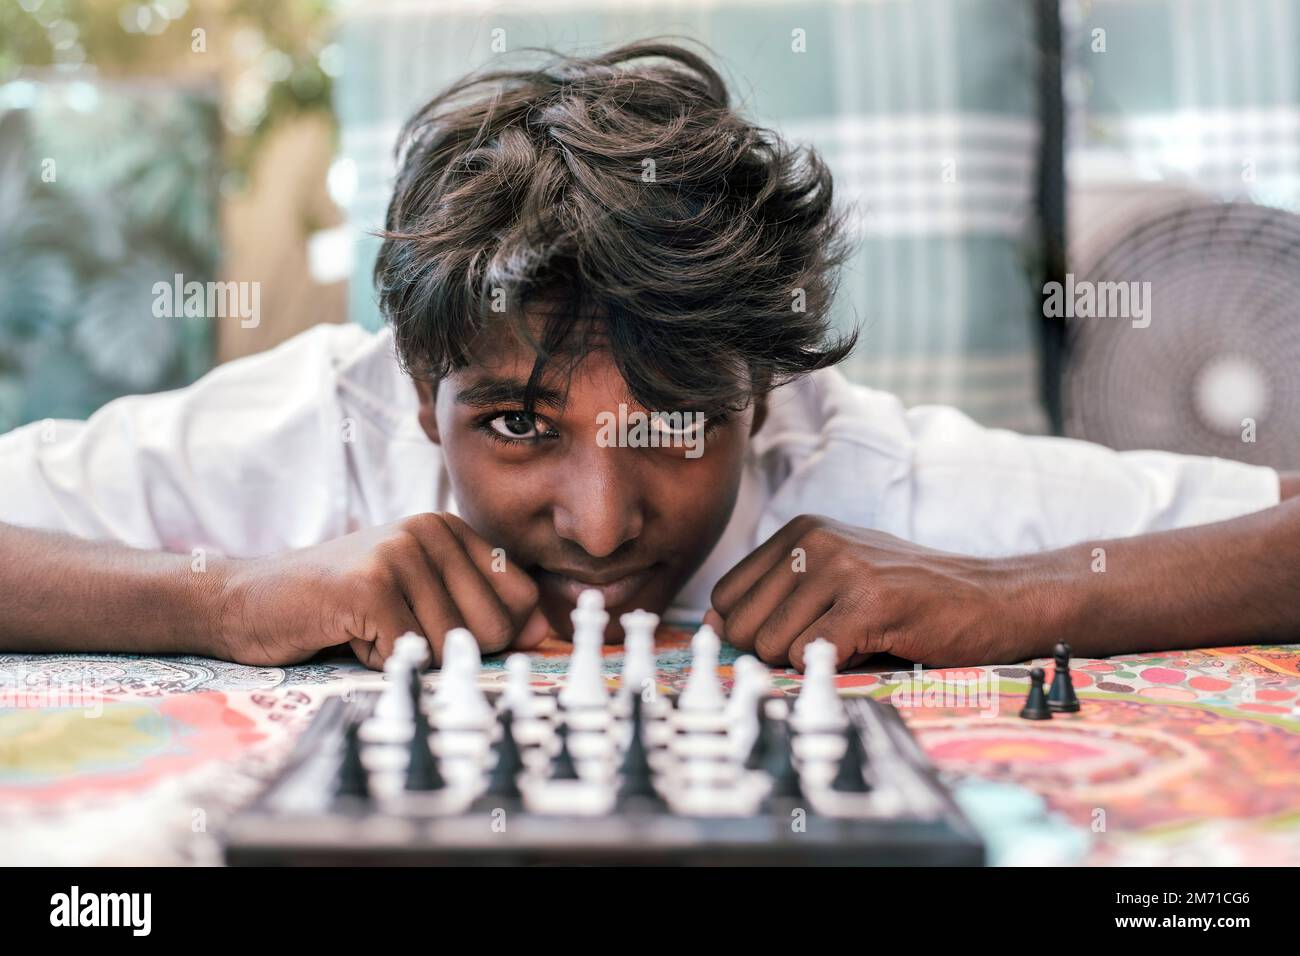 Ein Junge indischer Herkunft starrt in die Kamera, während er Schach spielt. Vorderansicht. Porträt eines indischen Jungen mit Schachbrett. Stockfoto